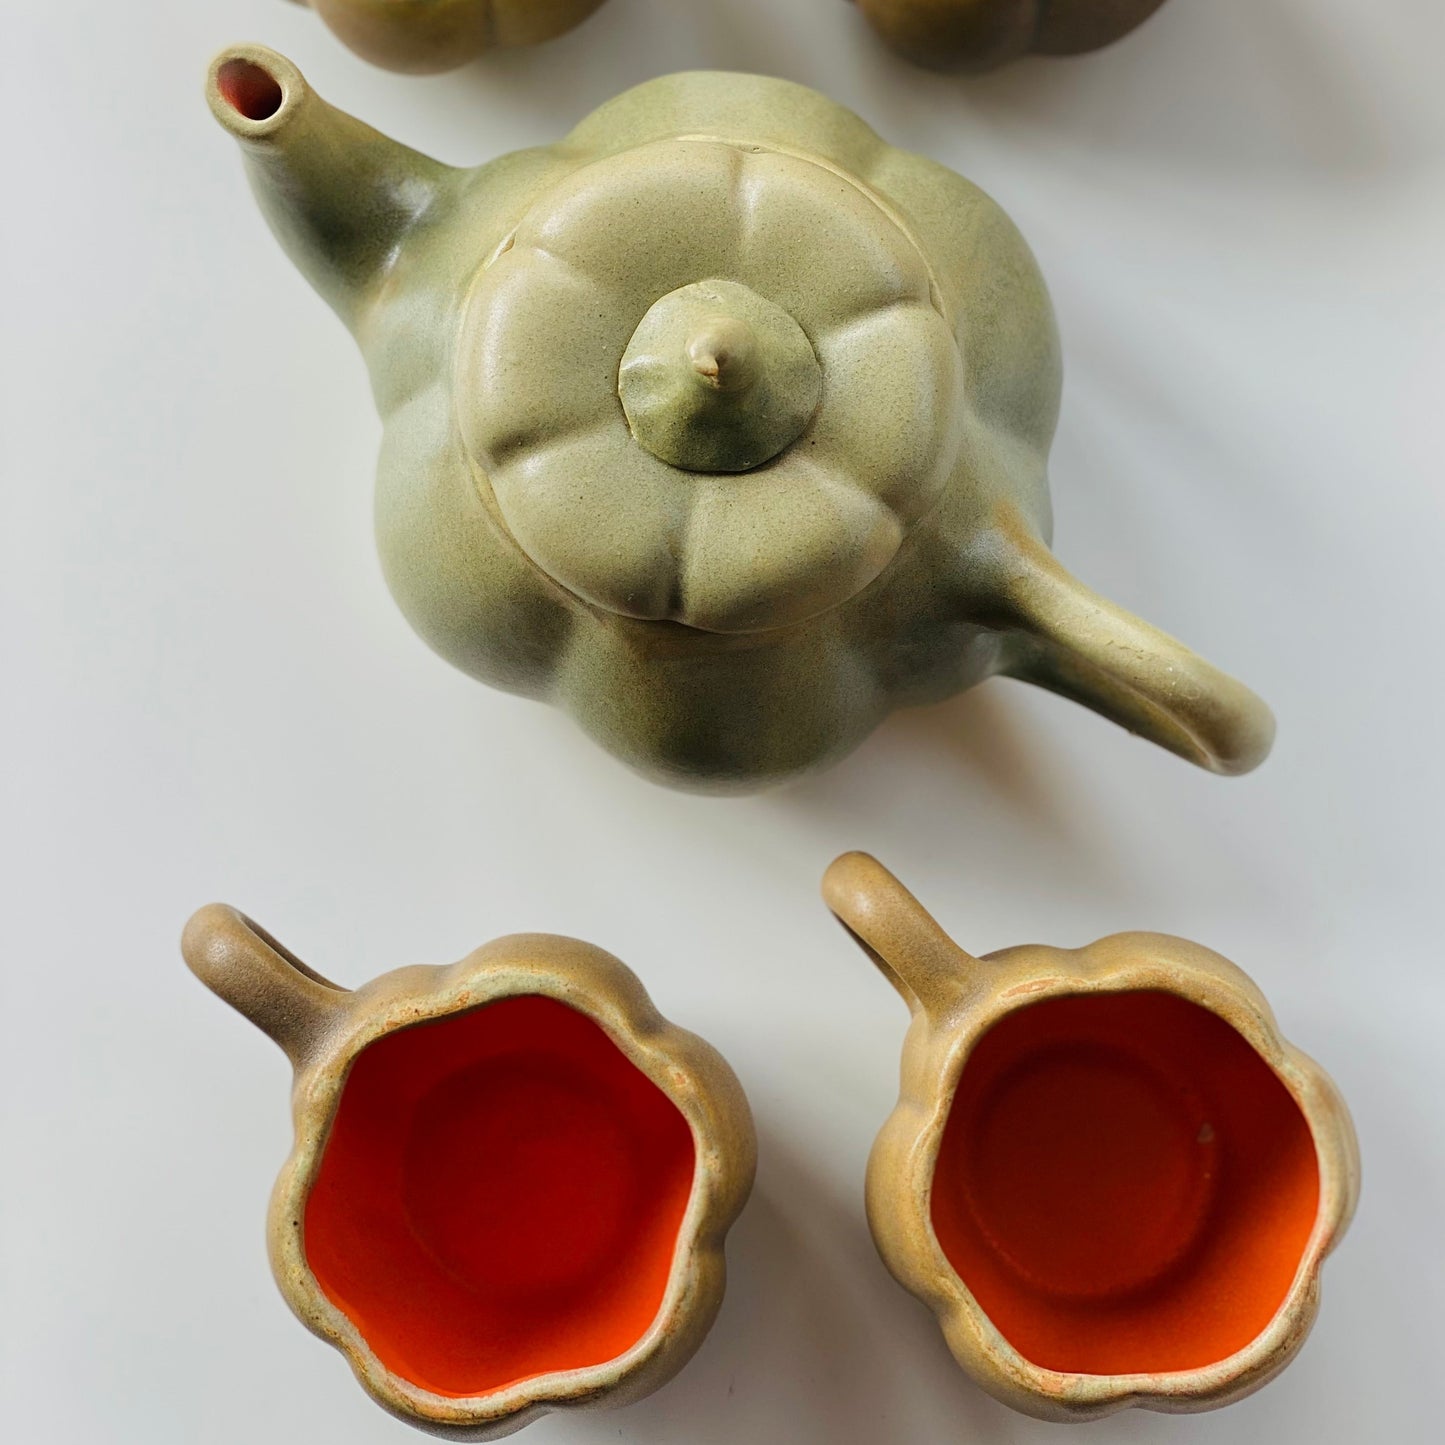 Ceramic Pumpkin Teapot Set with 4 Cups